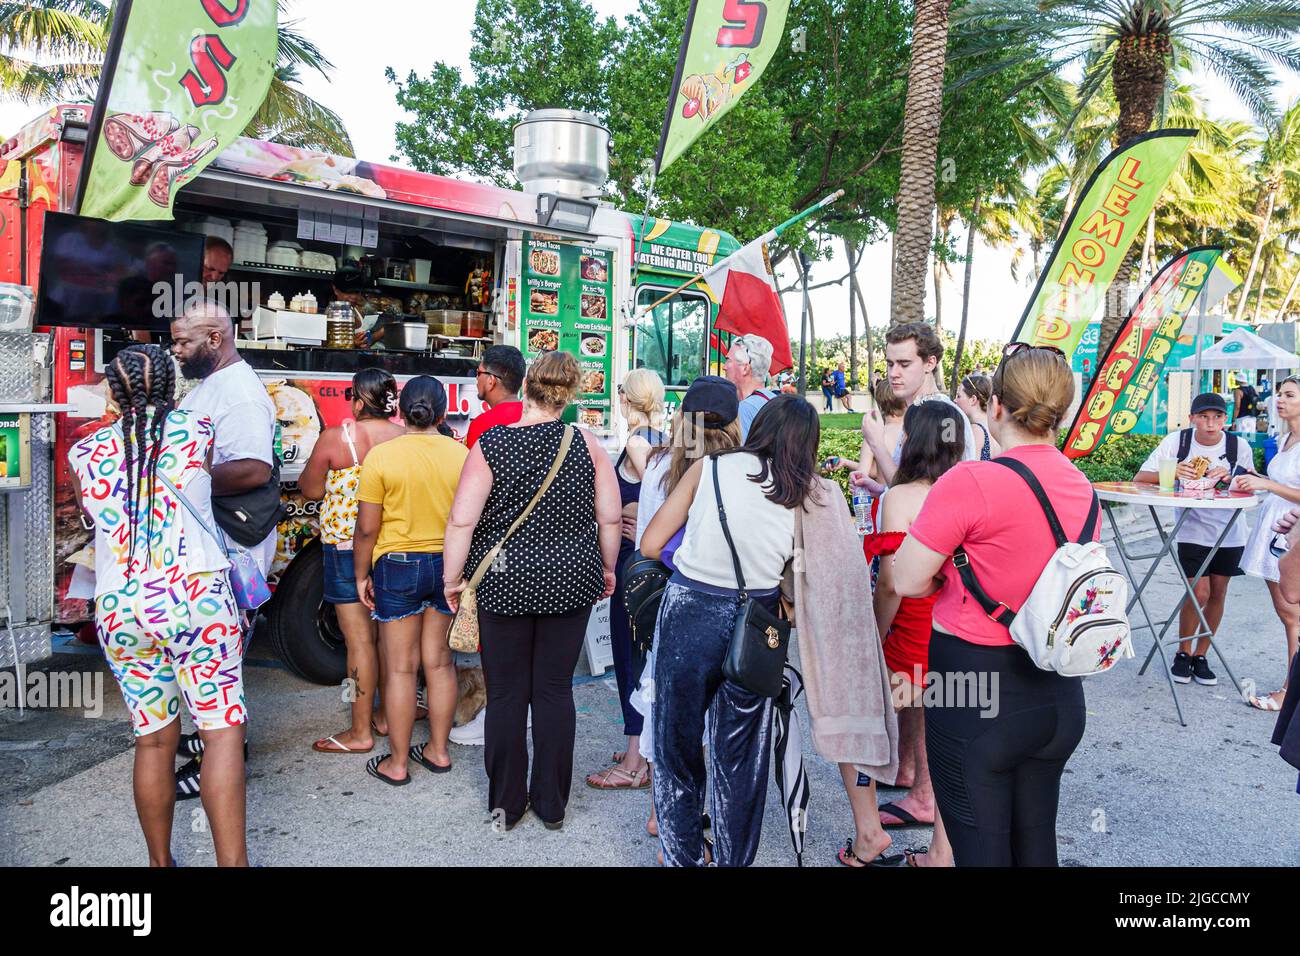 Miami Beach Florida, Ocean Terrace Fire auf der vierten 4. Juli Festival Event Feier, Lebensmittel LKW Linie Schlange Kunden Männer Frauen warten Stockfoto